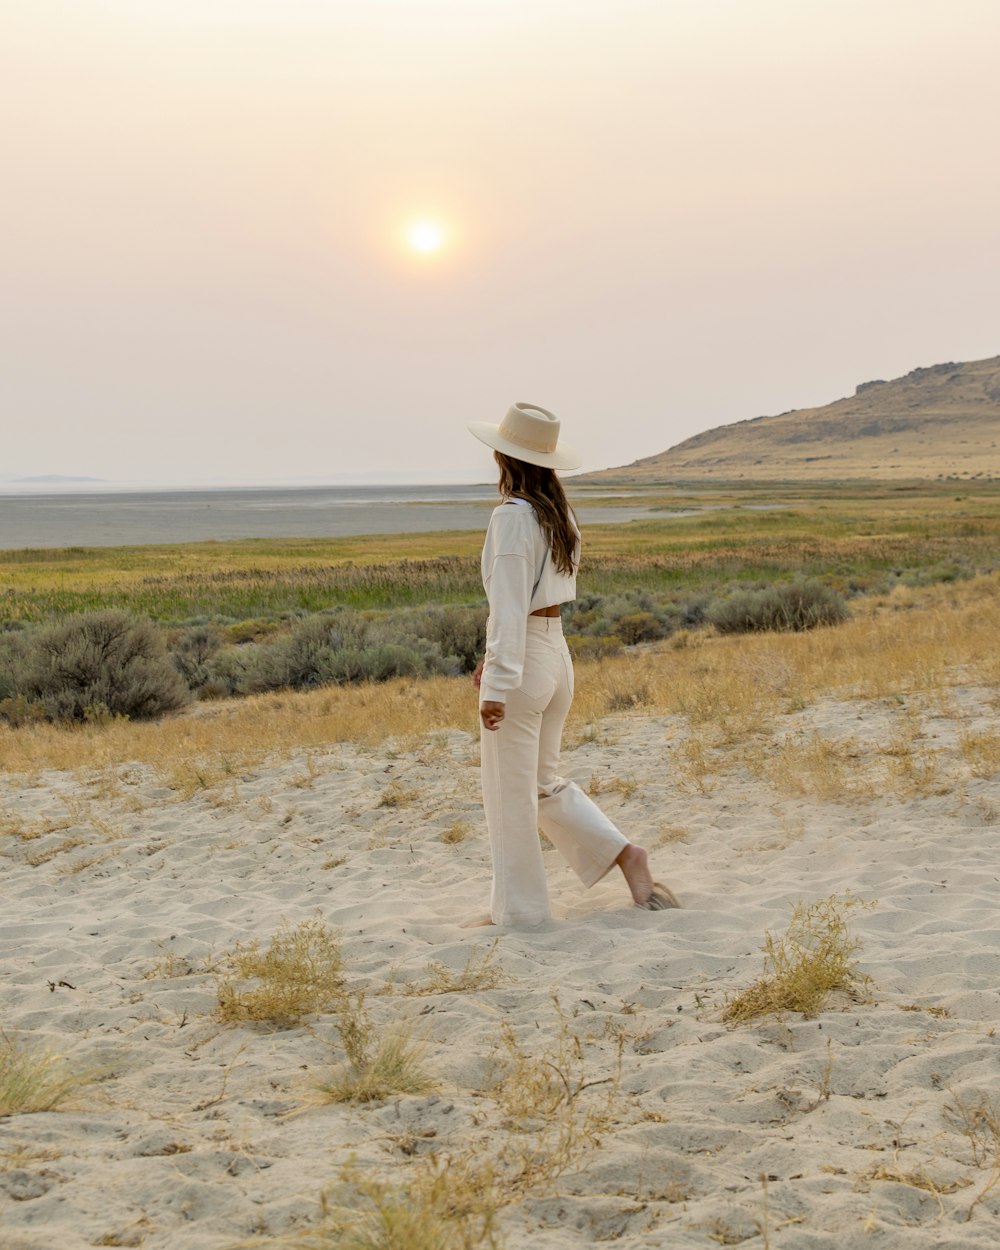 donna in abito bianco in piedi su campo marrone durante il giorno